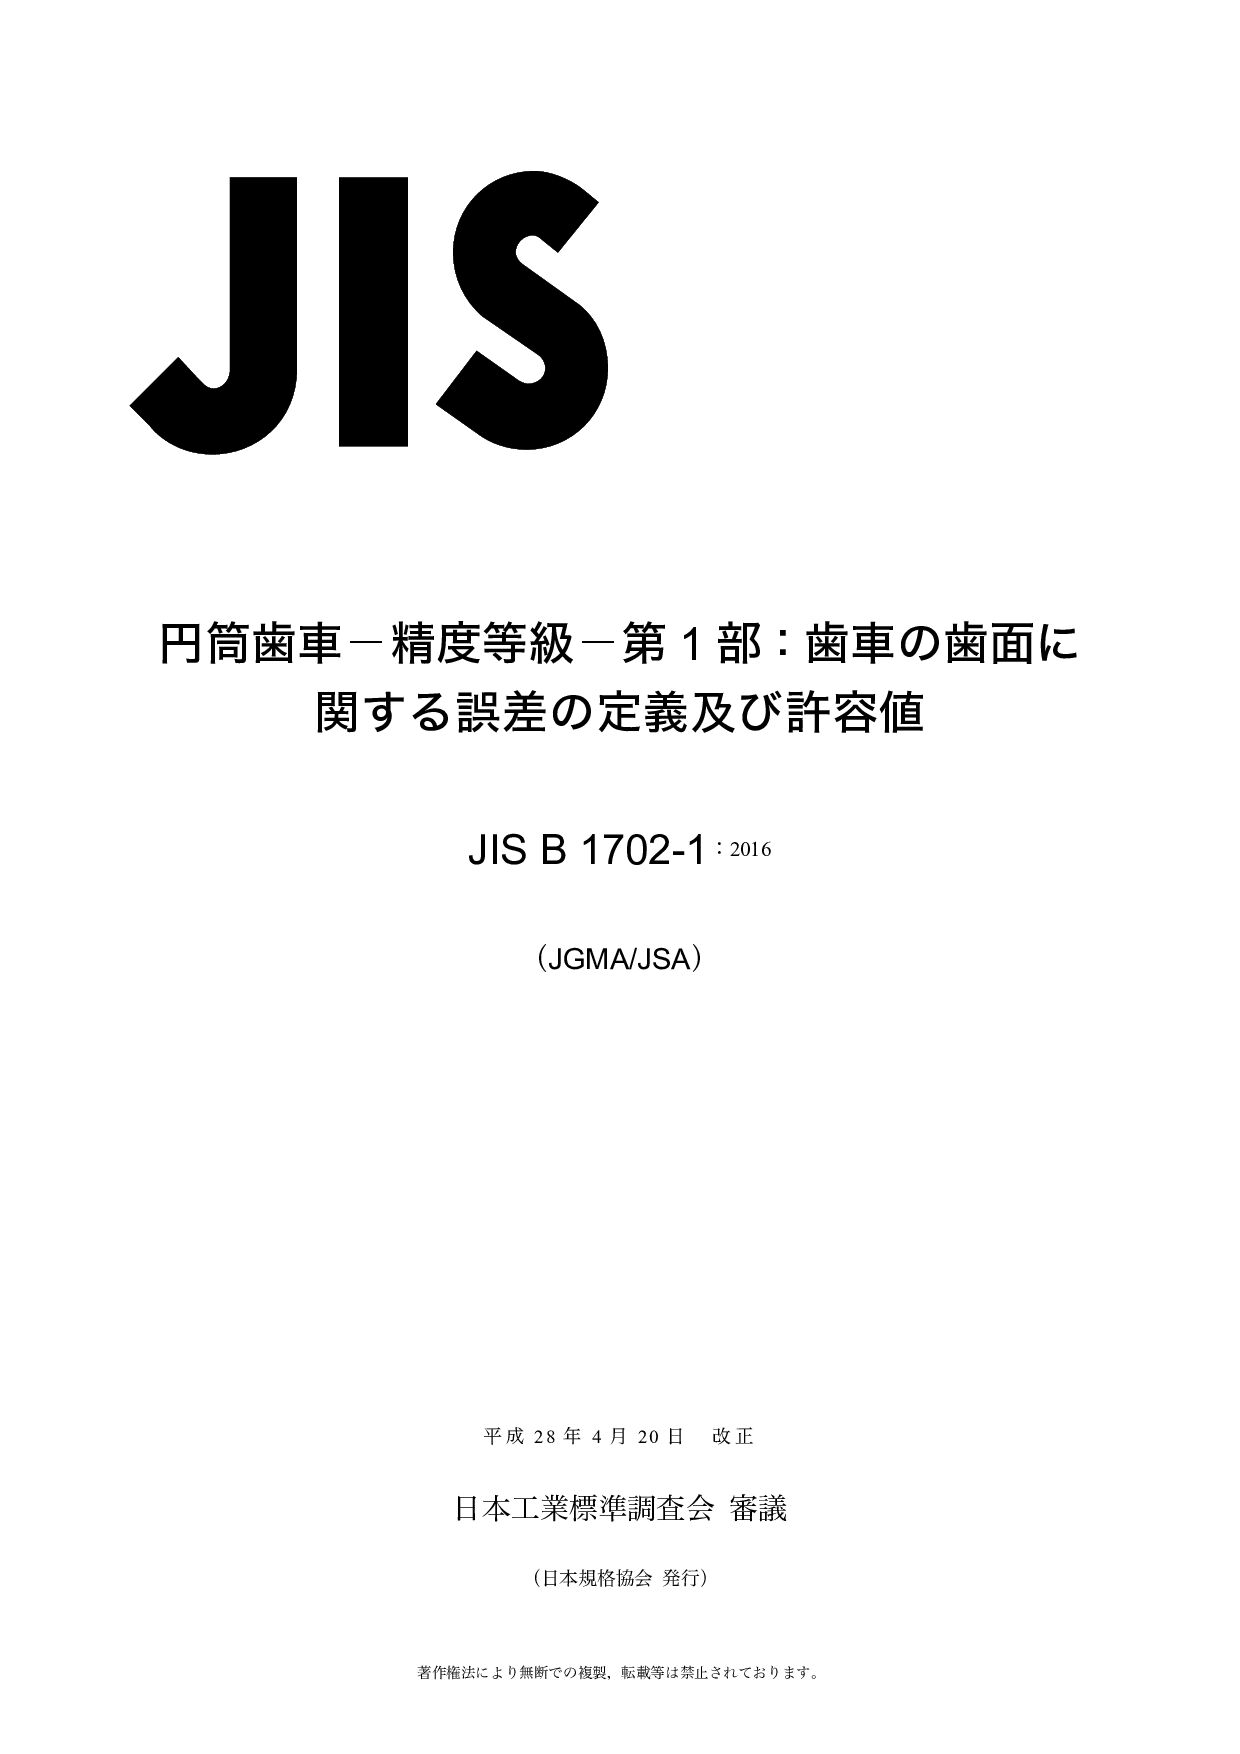 JIS B 1702-1:2016封面图